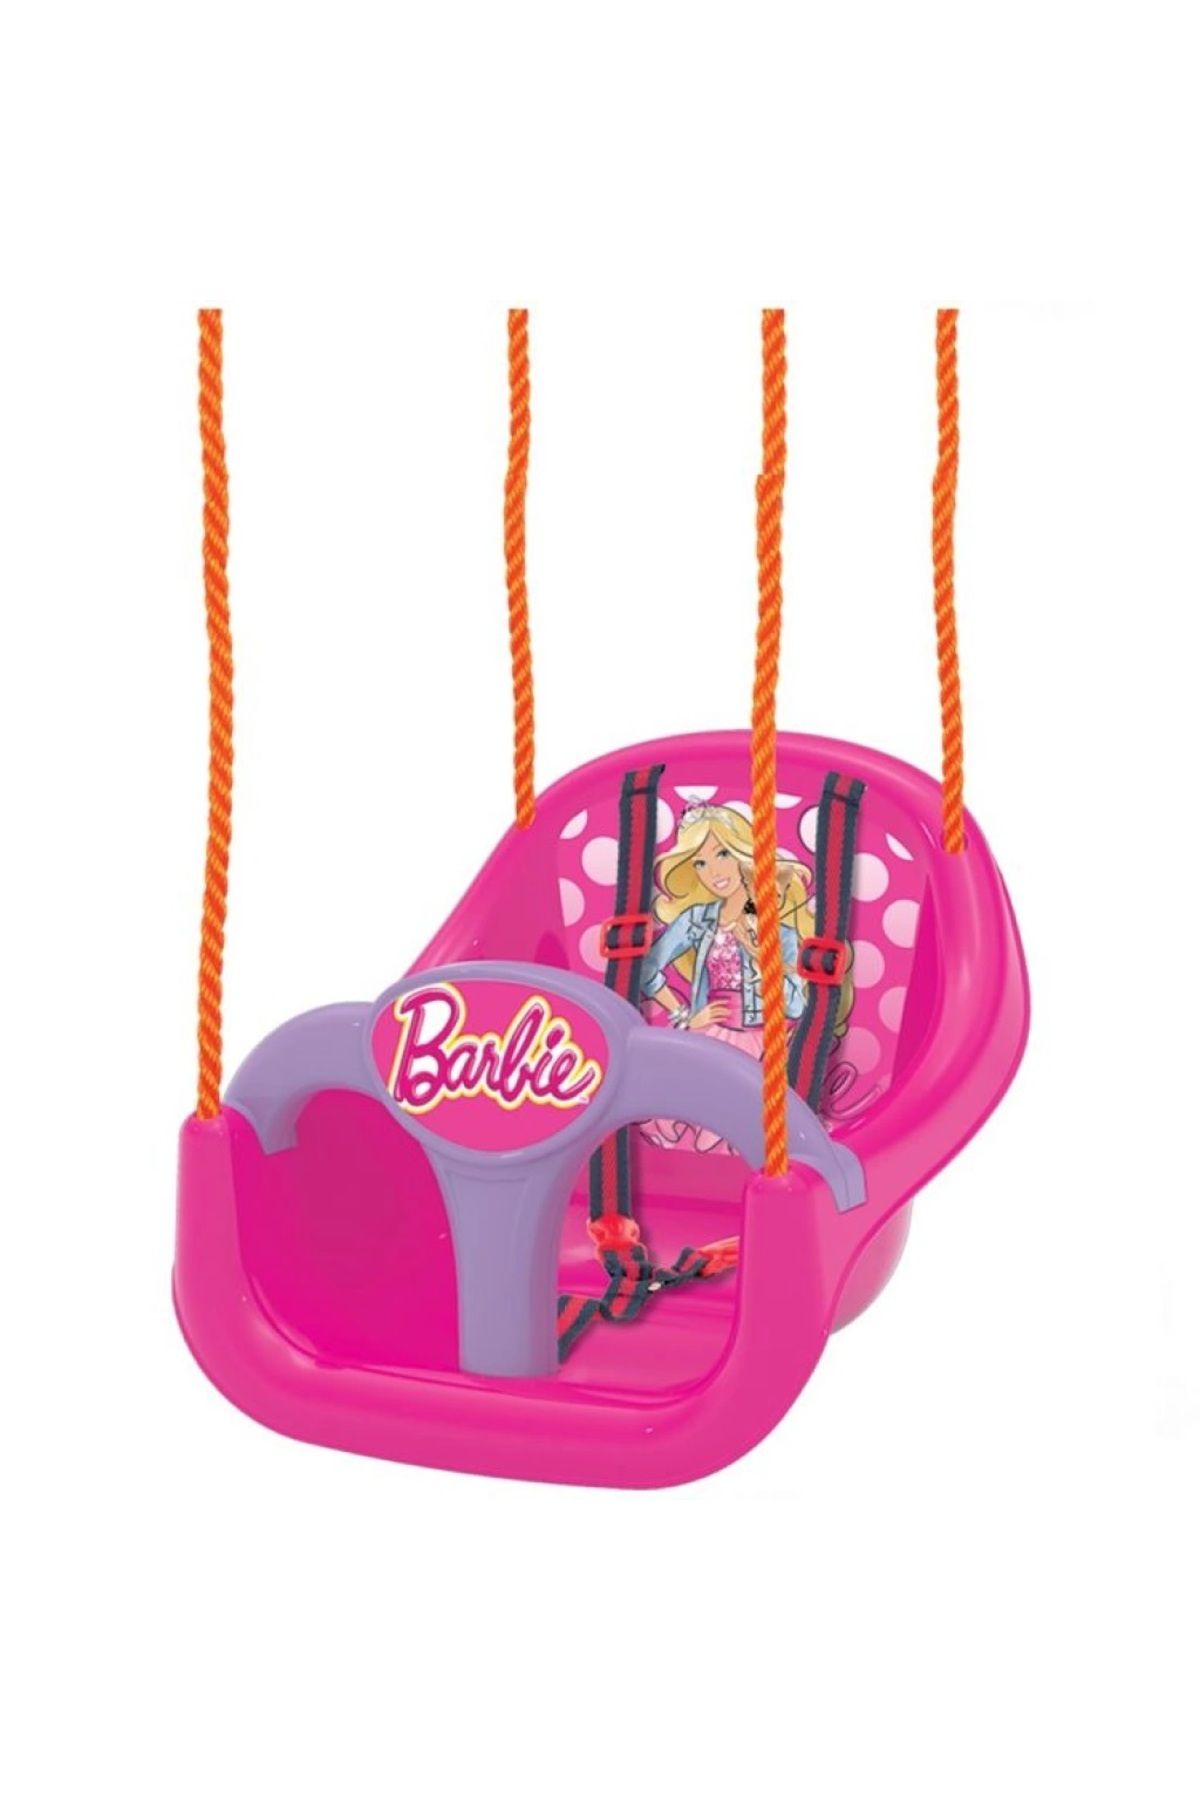 SAZE Barbie Salıncak Salıncakta sallanmak çocukların en sevdiği aktivitelerden biridir.